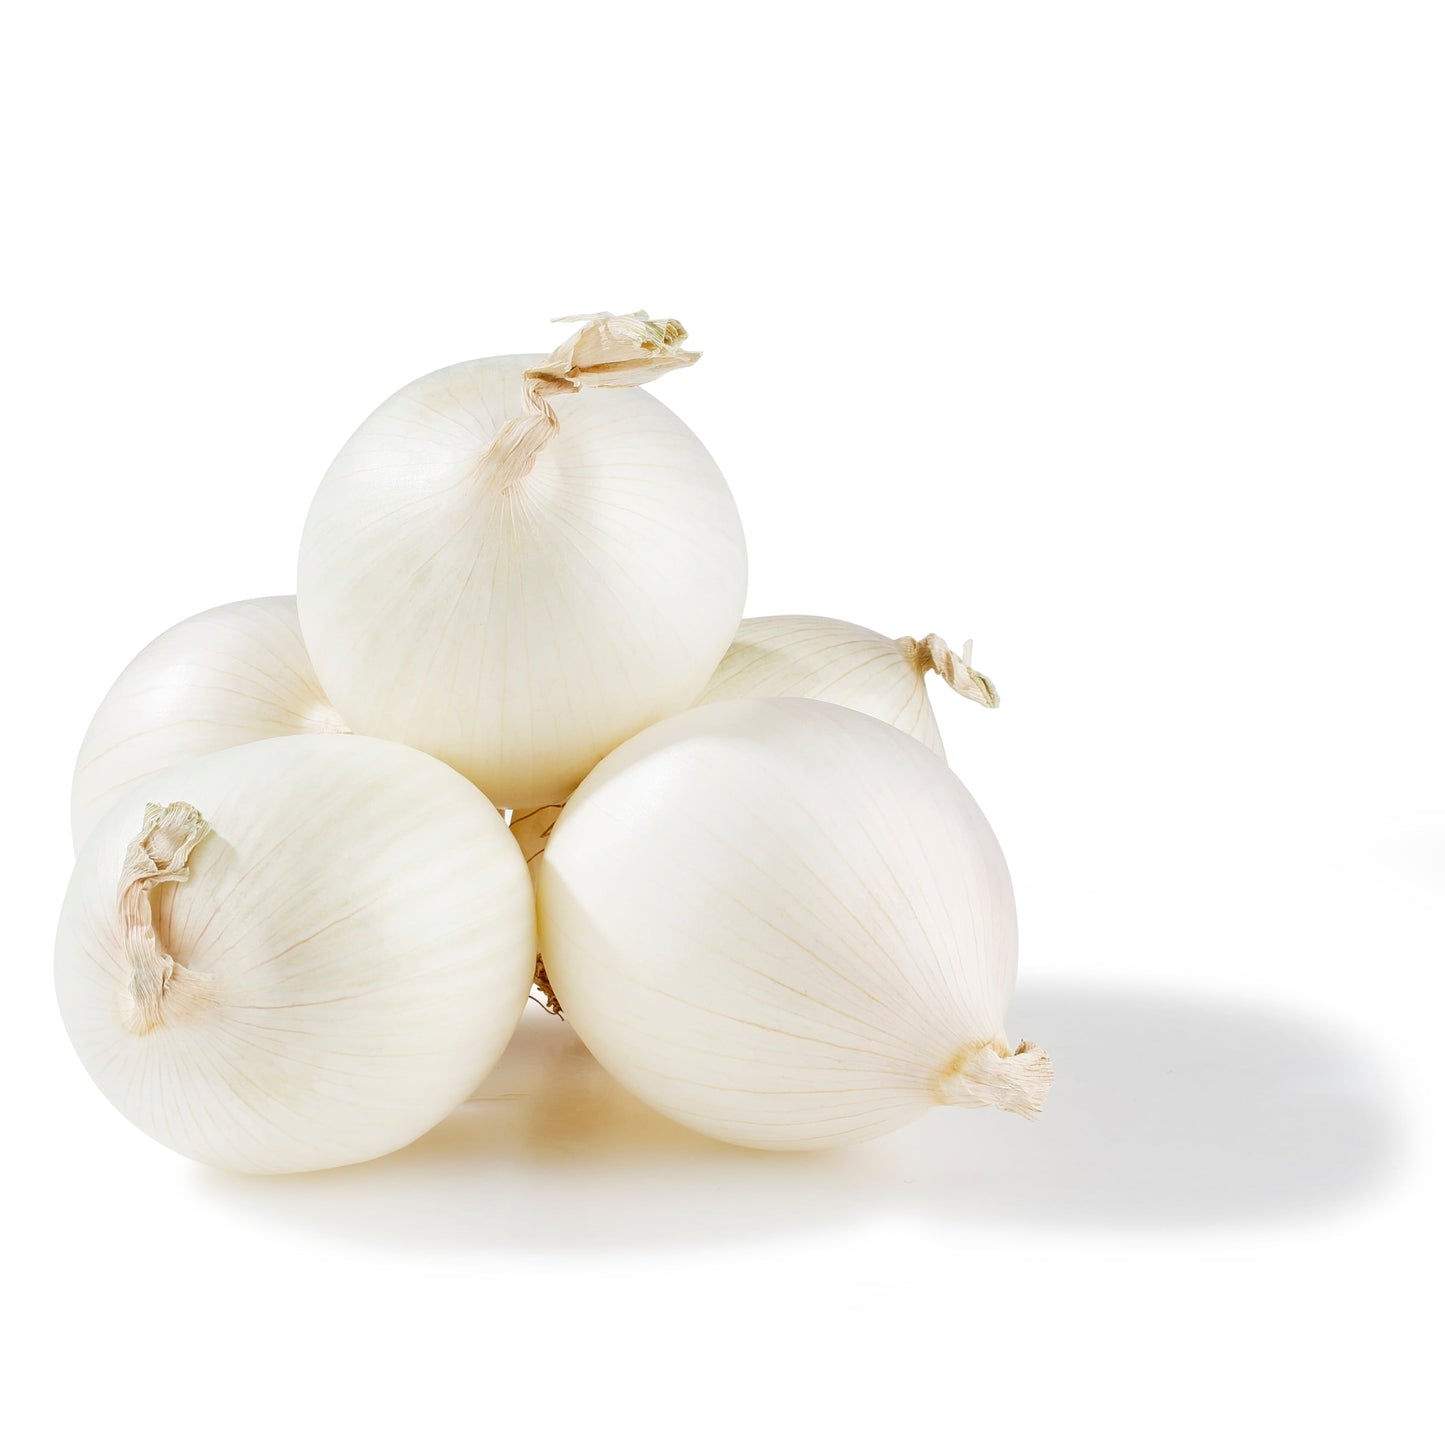 Fresh White Onions, 3 lb Bag